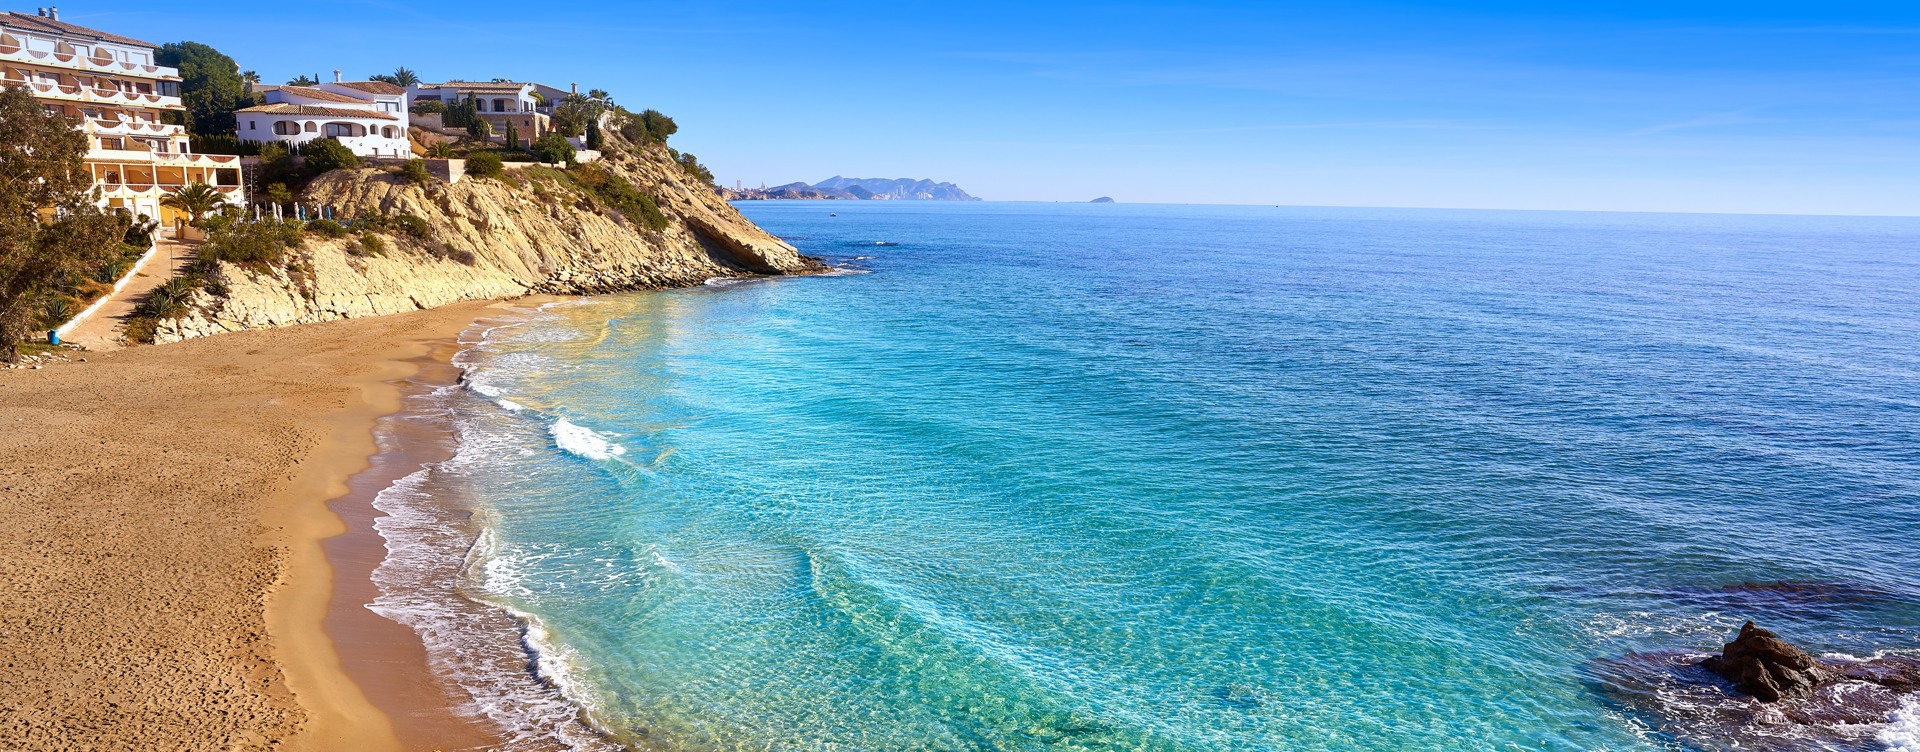 Découvrez les superbes environs de la côte espagnole 
autour du Dormio Resort Costa Blanca